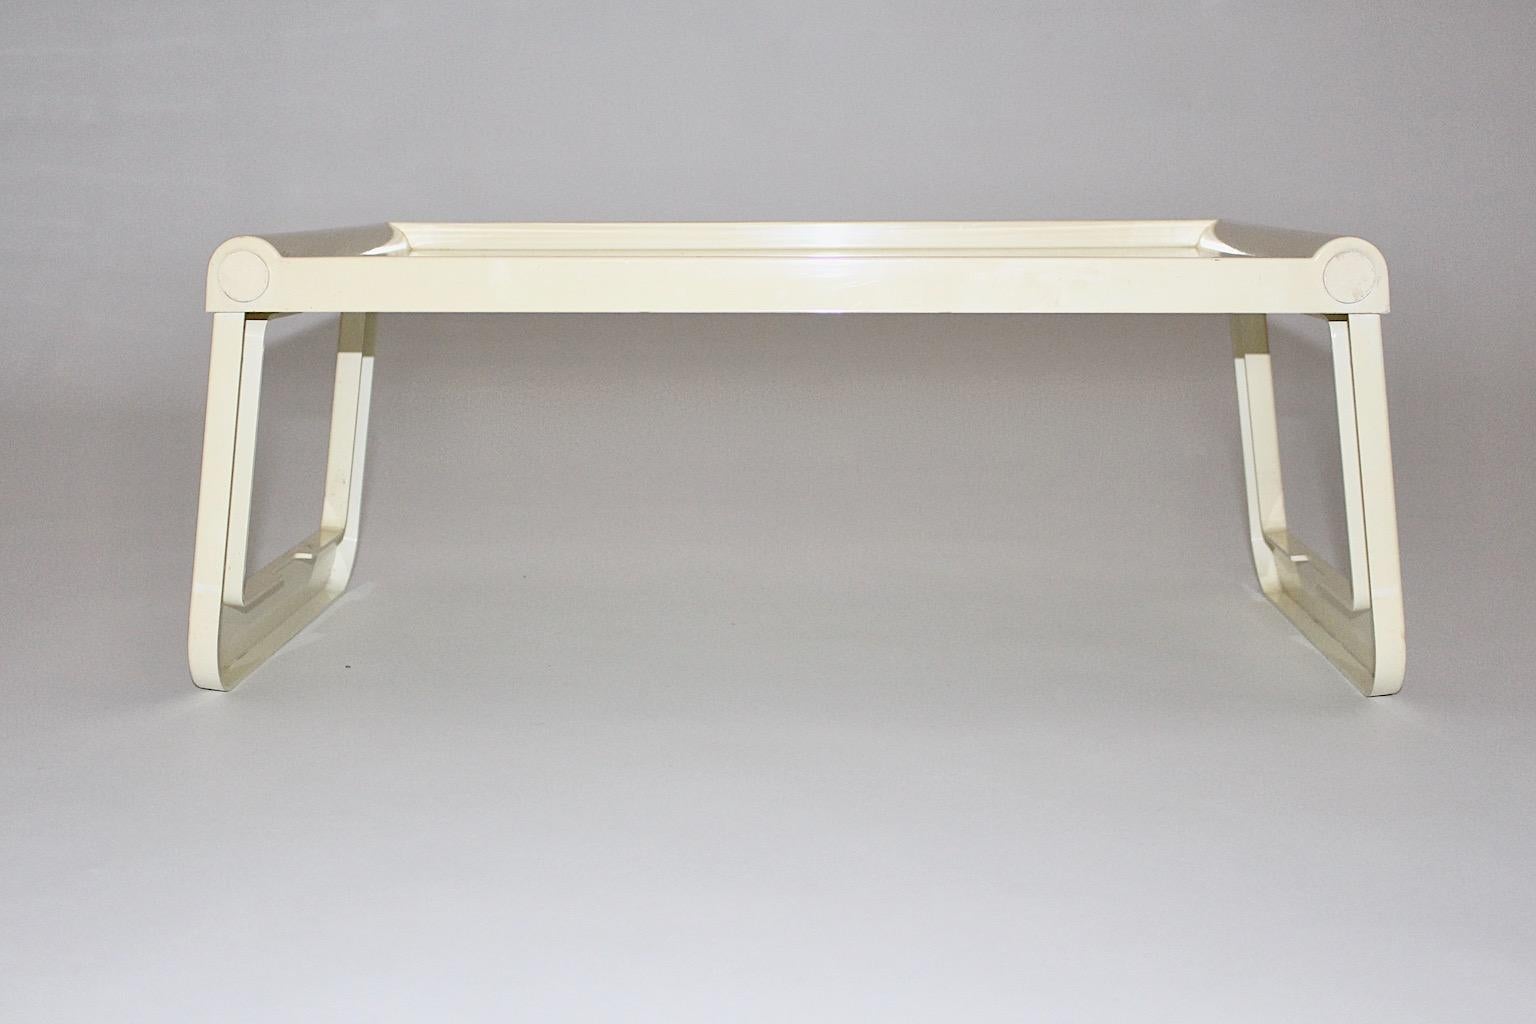 Plateau ou table pliable ivoire vintage Space Age en plastique conçu par Luigi Massoni Grafico Studio Zeto pour Guzzini 1970 Italie.
Cette table à plateau pliable est très utile comme table de petit-déjeuner ou table pour ordinateur